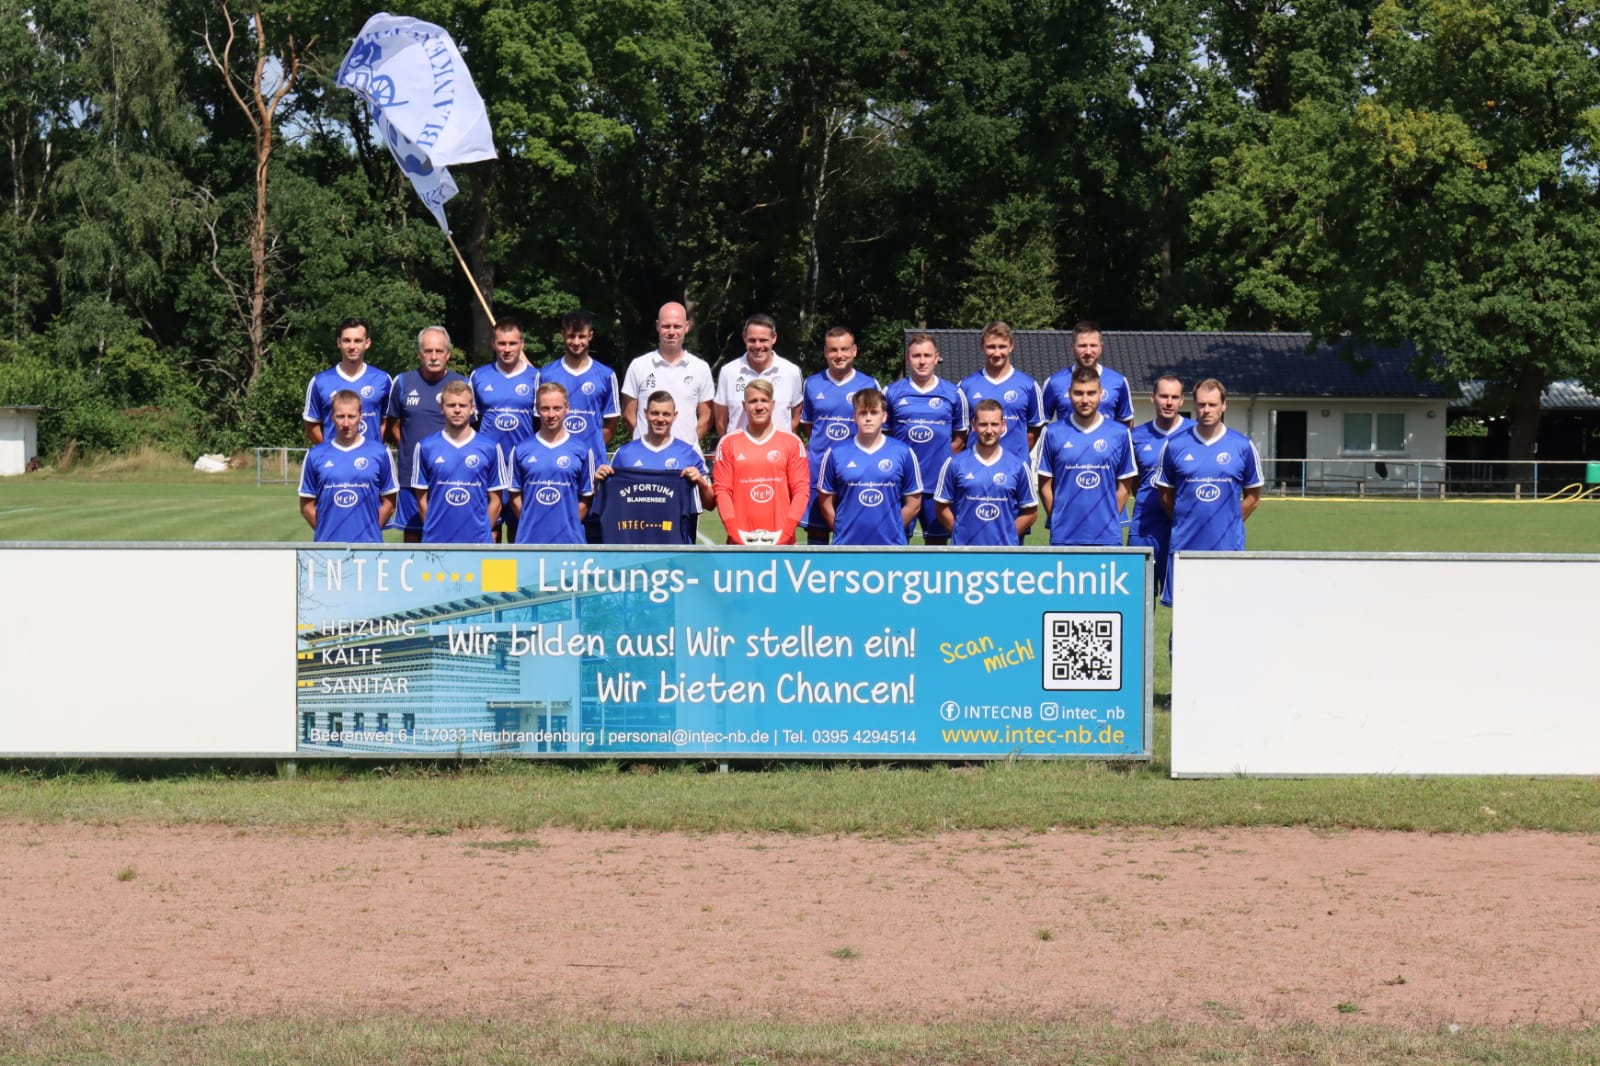 Fußballverein SV Fortuna Blankensee -Intec Sponsor